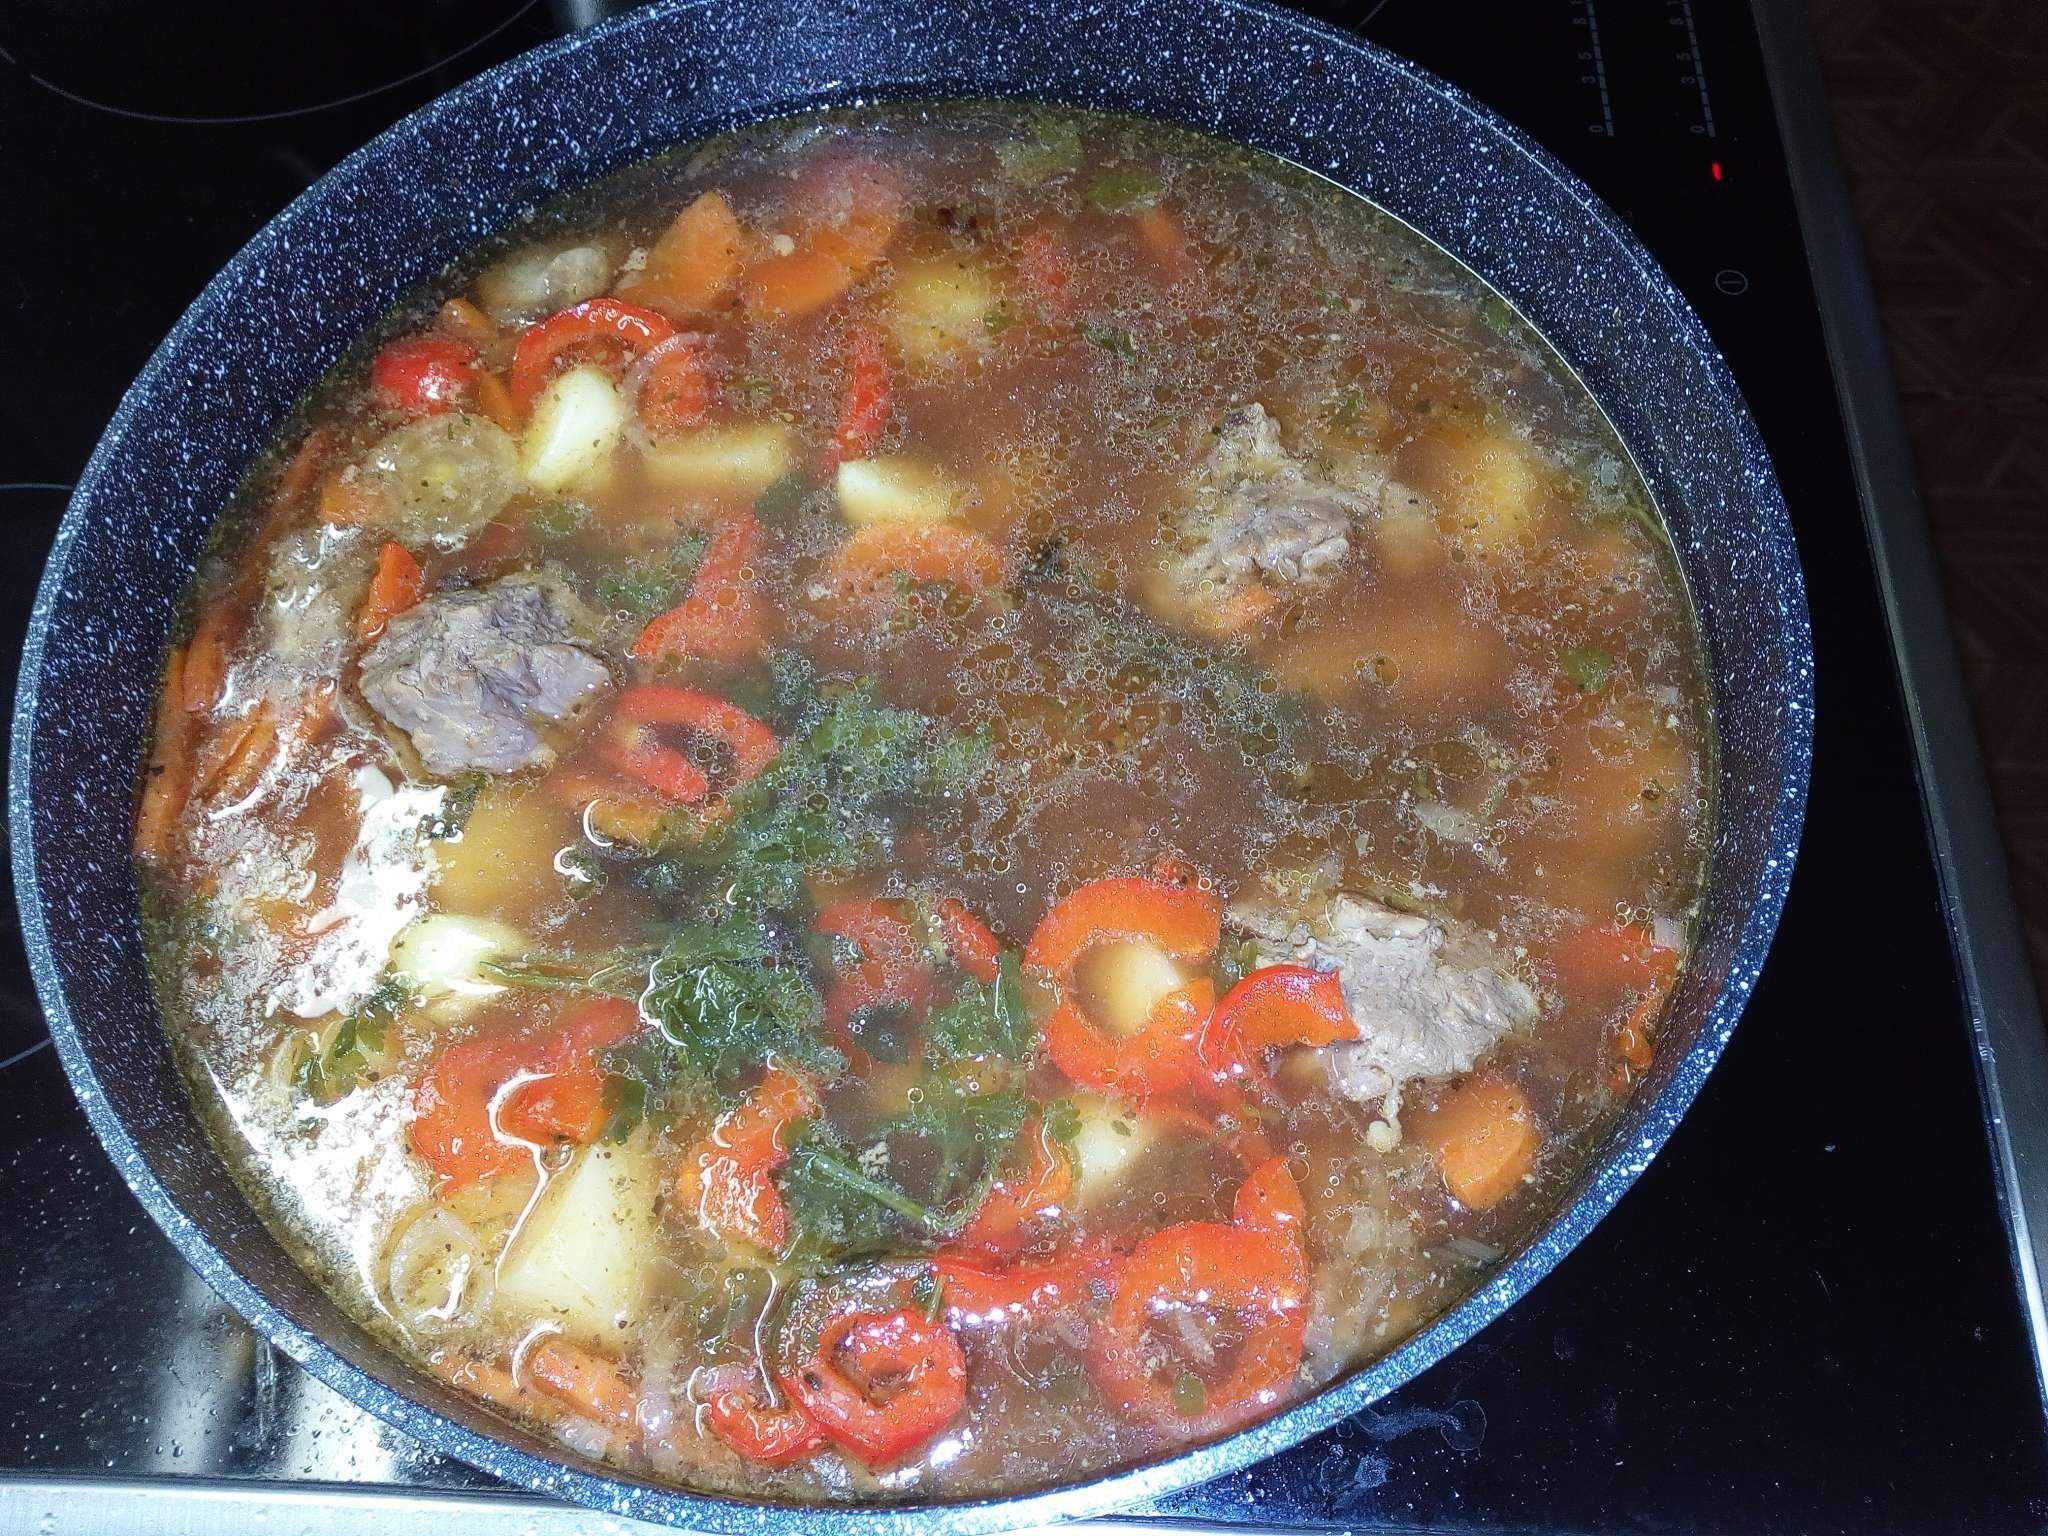 Суп шурпа из говядины - пошаговые рецепты приготовления шурпы в домашних условиях